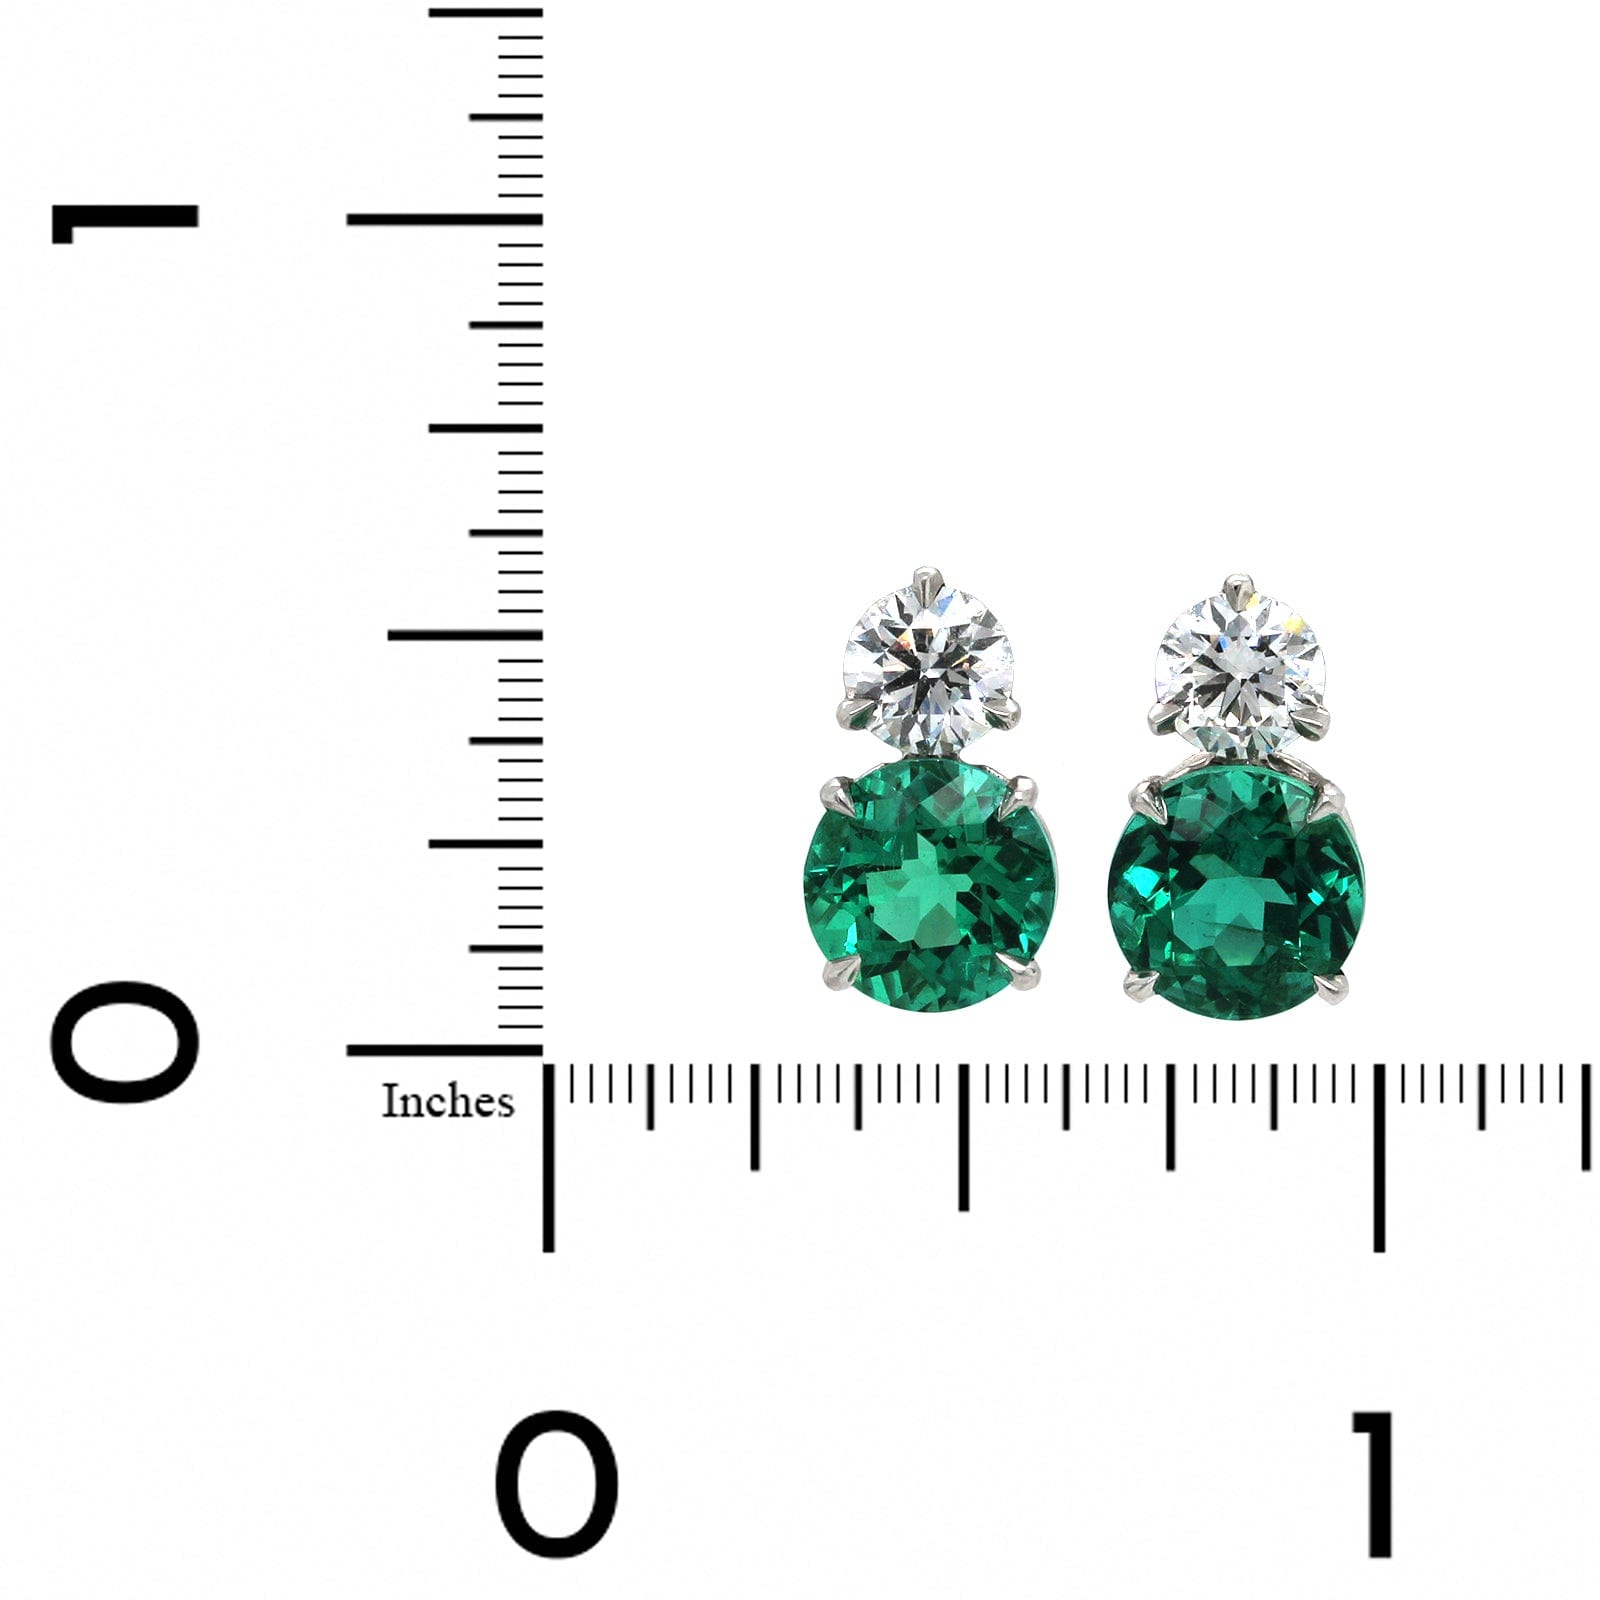 Platinum Emerald and Diamond Stud Earrings